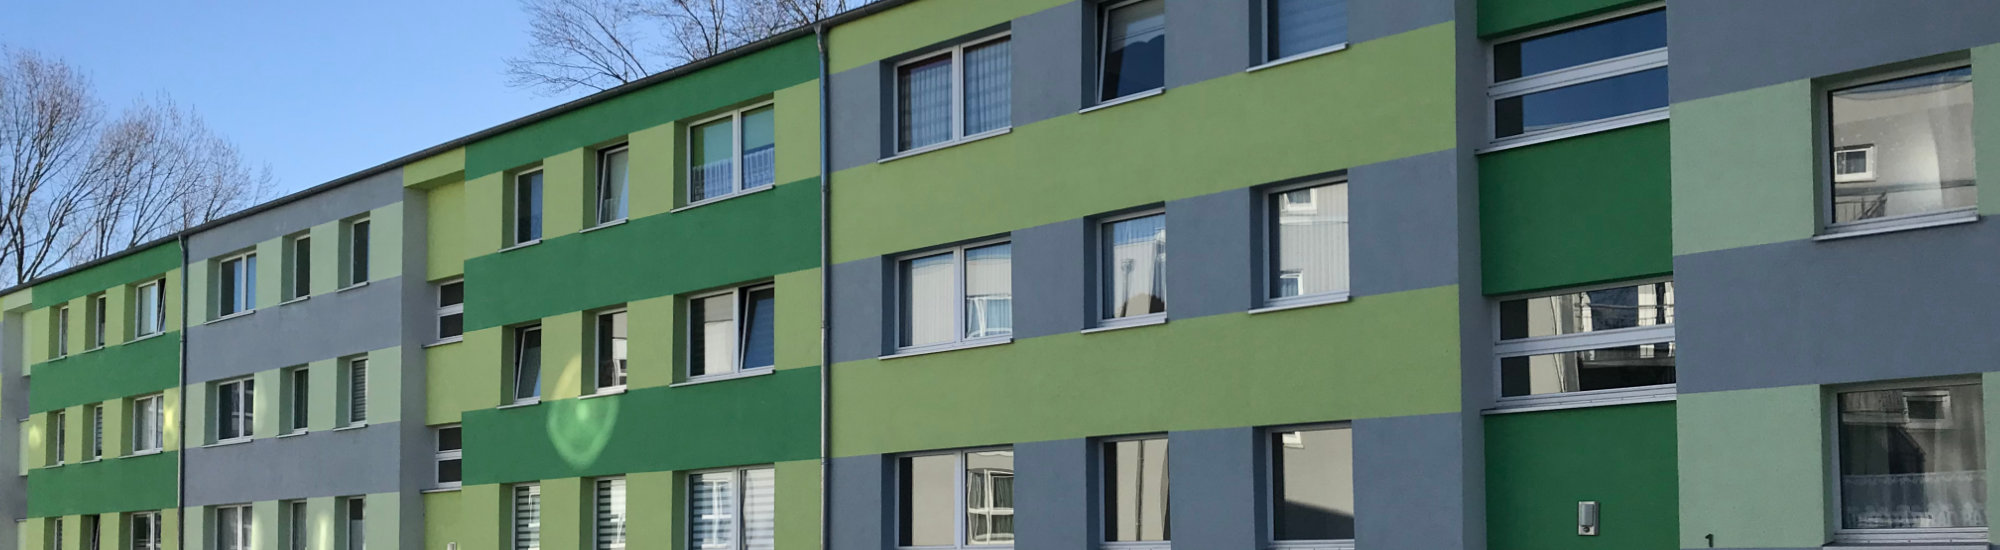 Modernisierung eines Wohnblocks in Salzgitter, Niedersachsen mit einer Dämmfassade